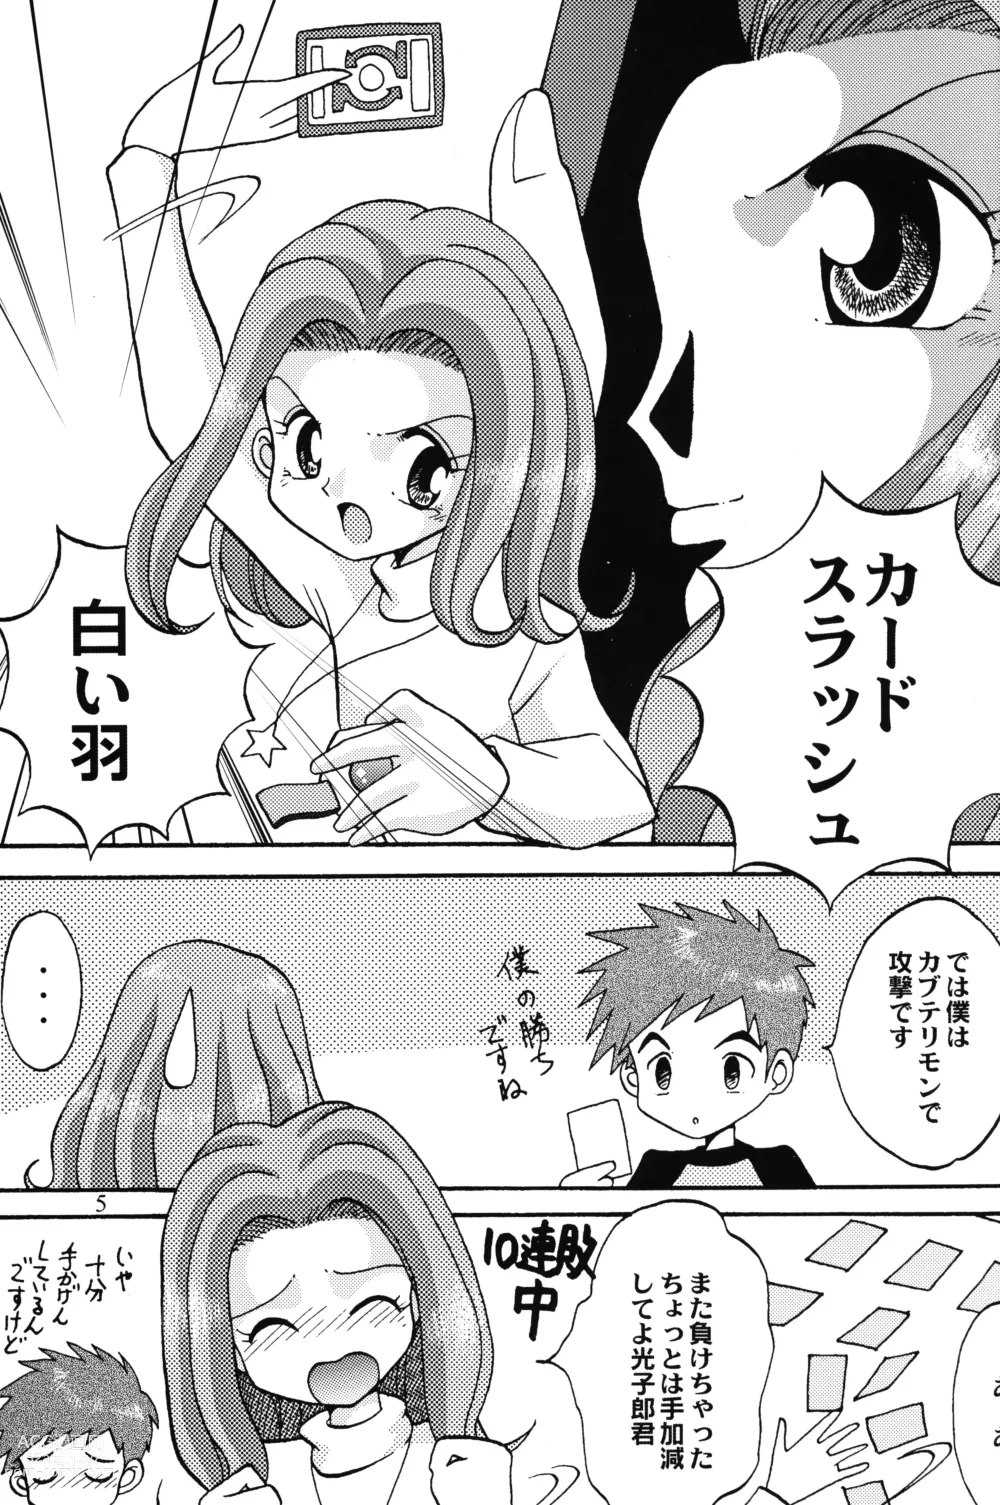 Page 4 of doujinshi Sora Mimi Hour 4